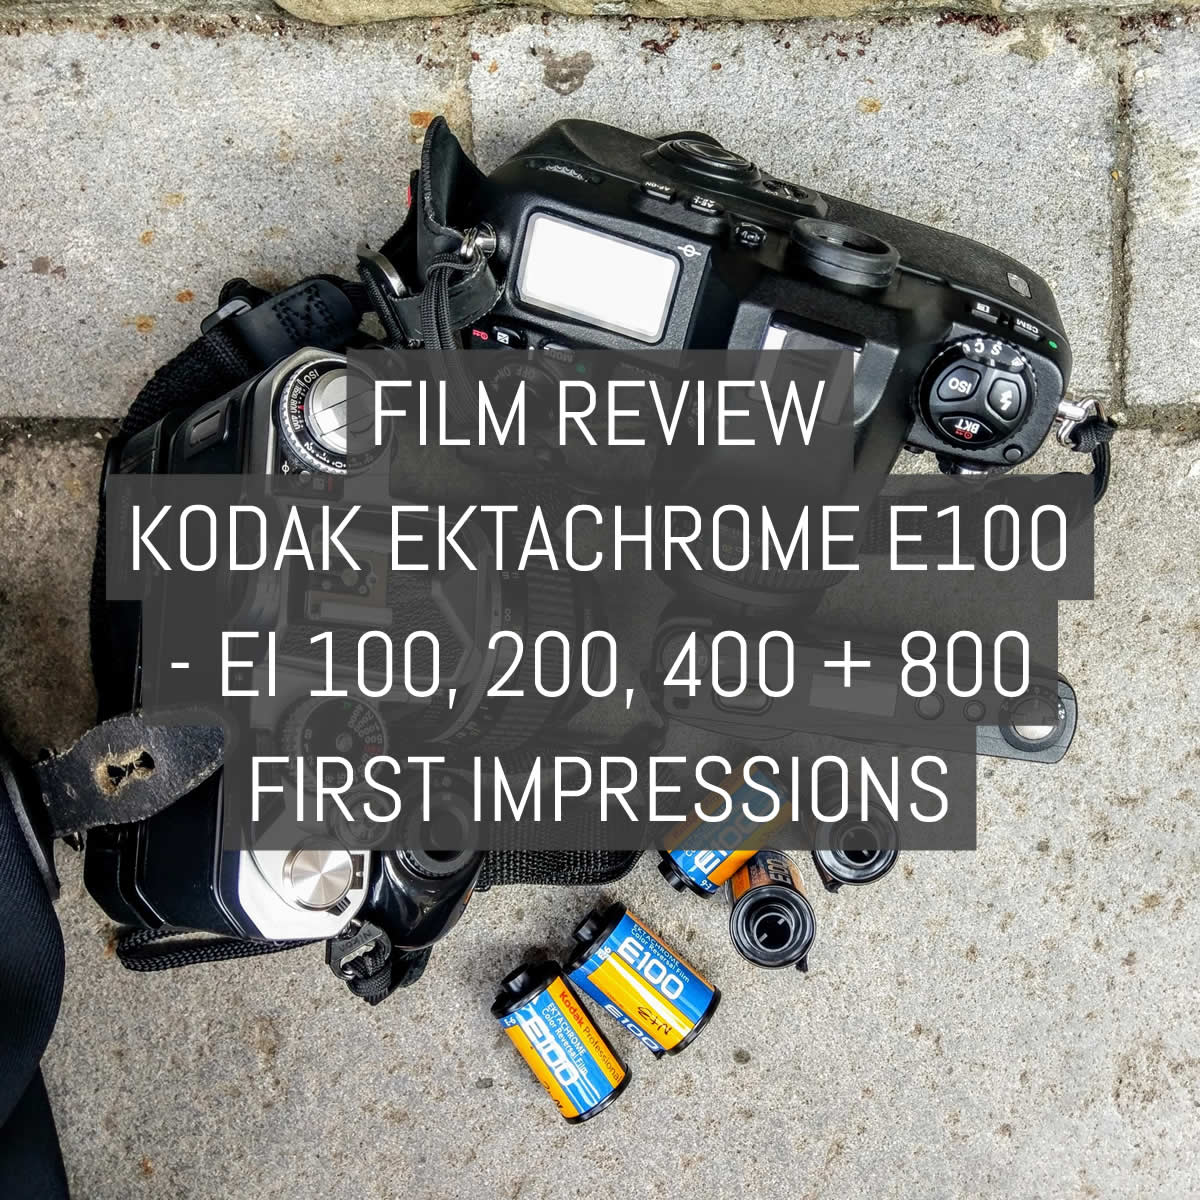 Cover - Film review - Kodak EKTACHROME E100 - EI 100, 200, 400, 800 first impressions